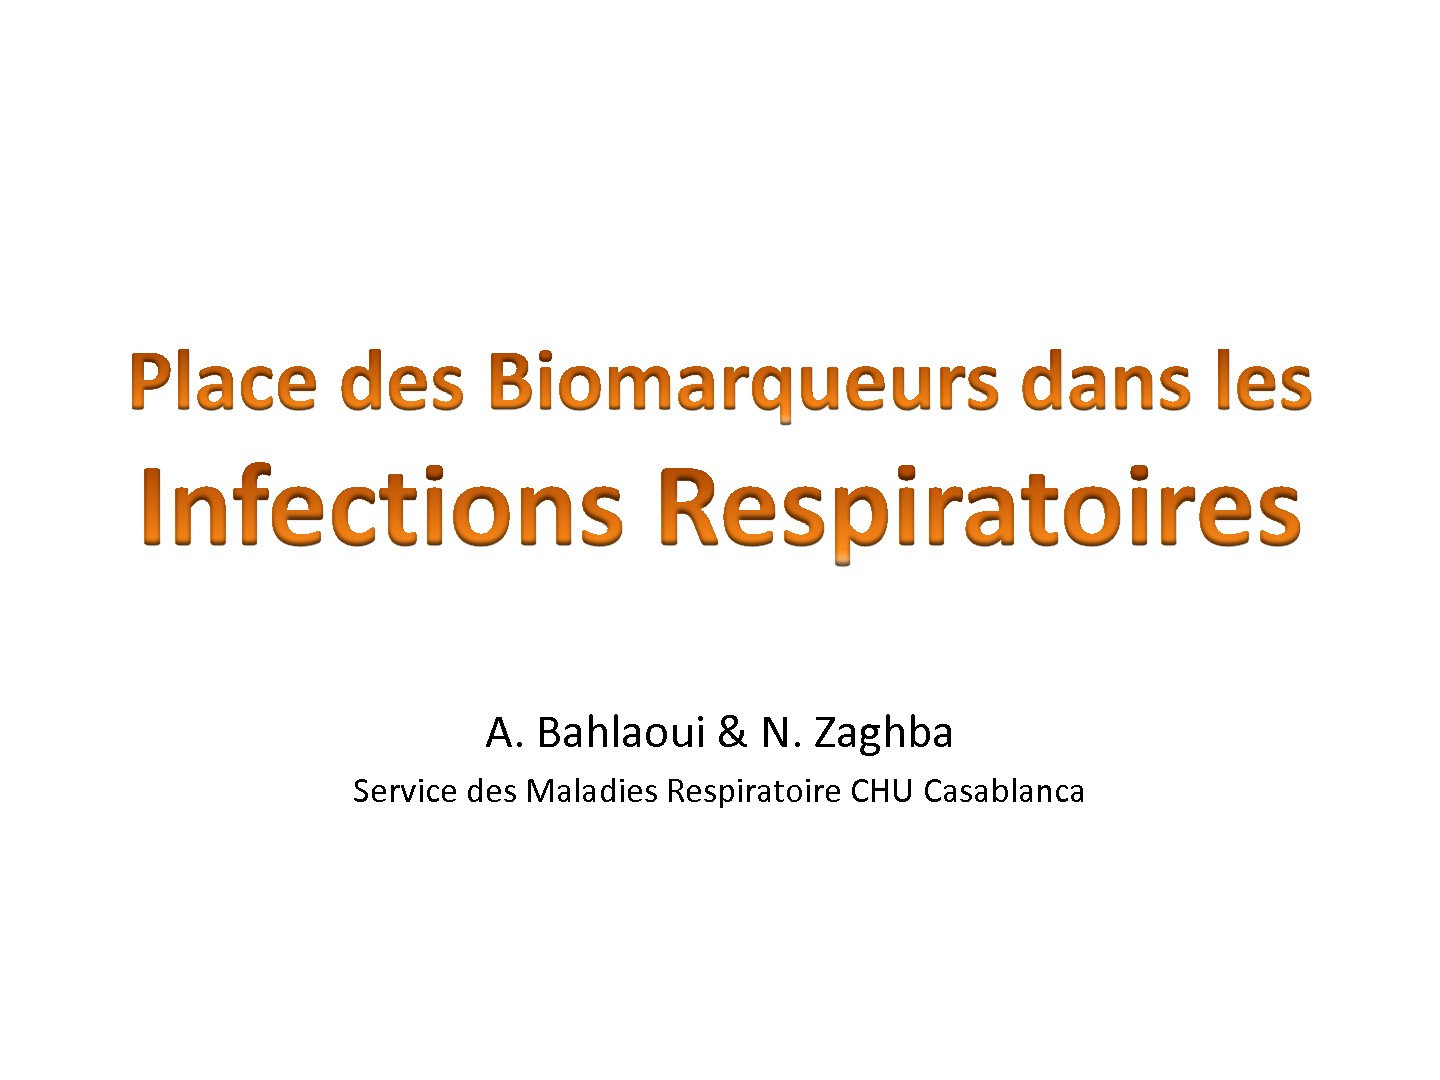 Place des Biomarqueurs dans les infections respiratoires. A. Bahlaoui & N. Zaghba